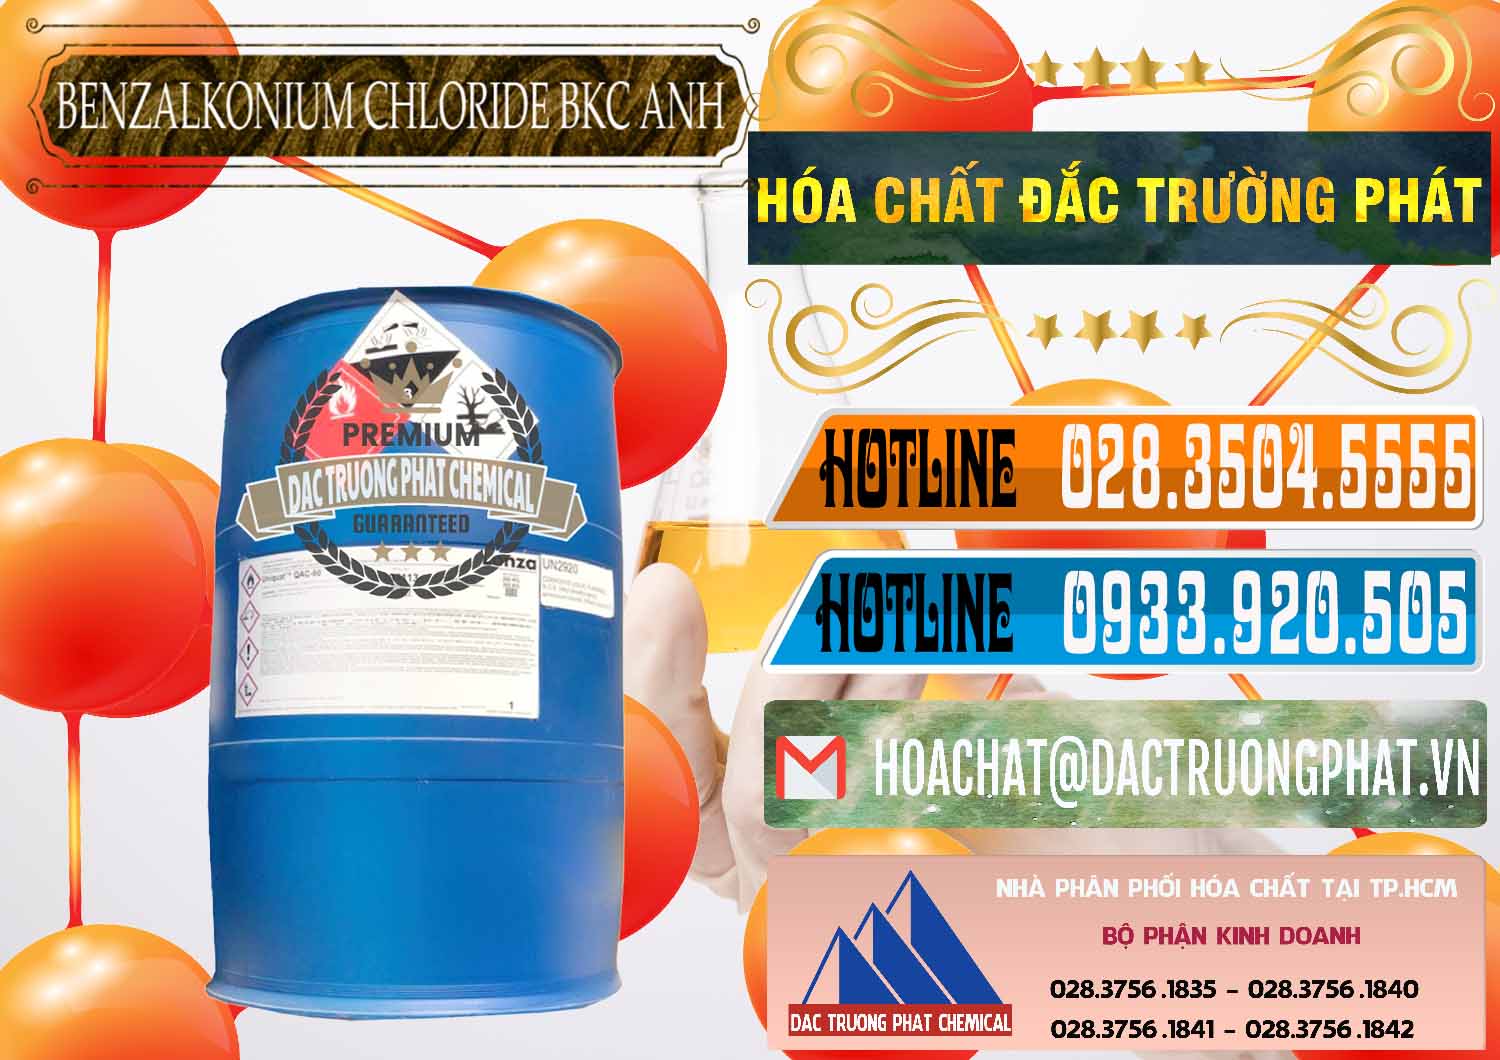 Công ty nhập khẩu & bán BKC - Benzalkonium Chloride 80% Anh Quốc Uk Kingdoms - 0457 - Đơn vị cung cấp ( nhập khẩu ) hóa chất tại TP.HCM - stmp.net